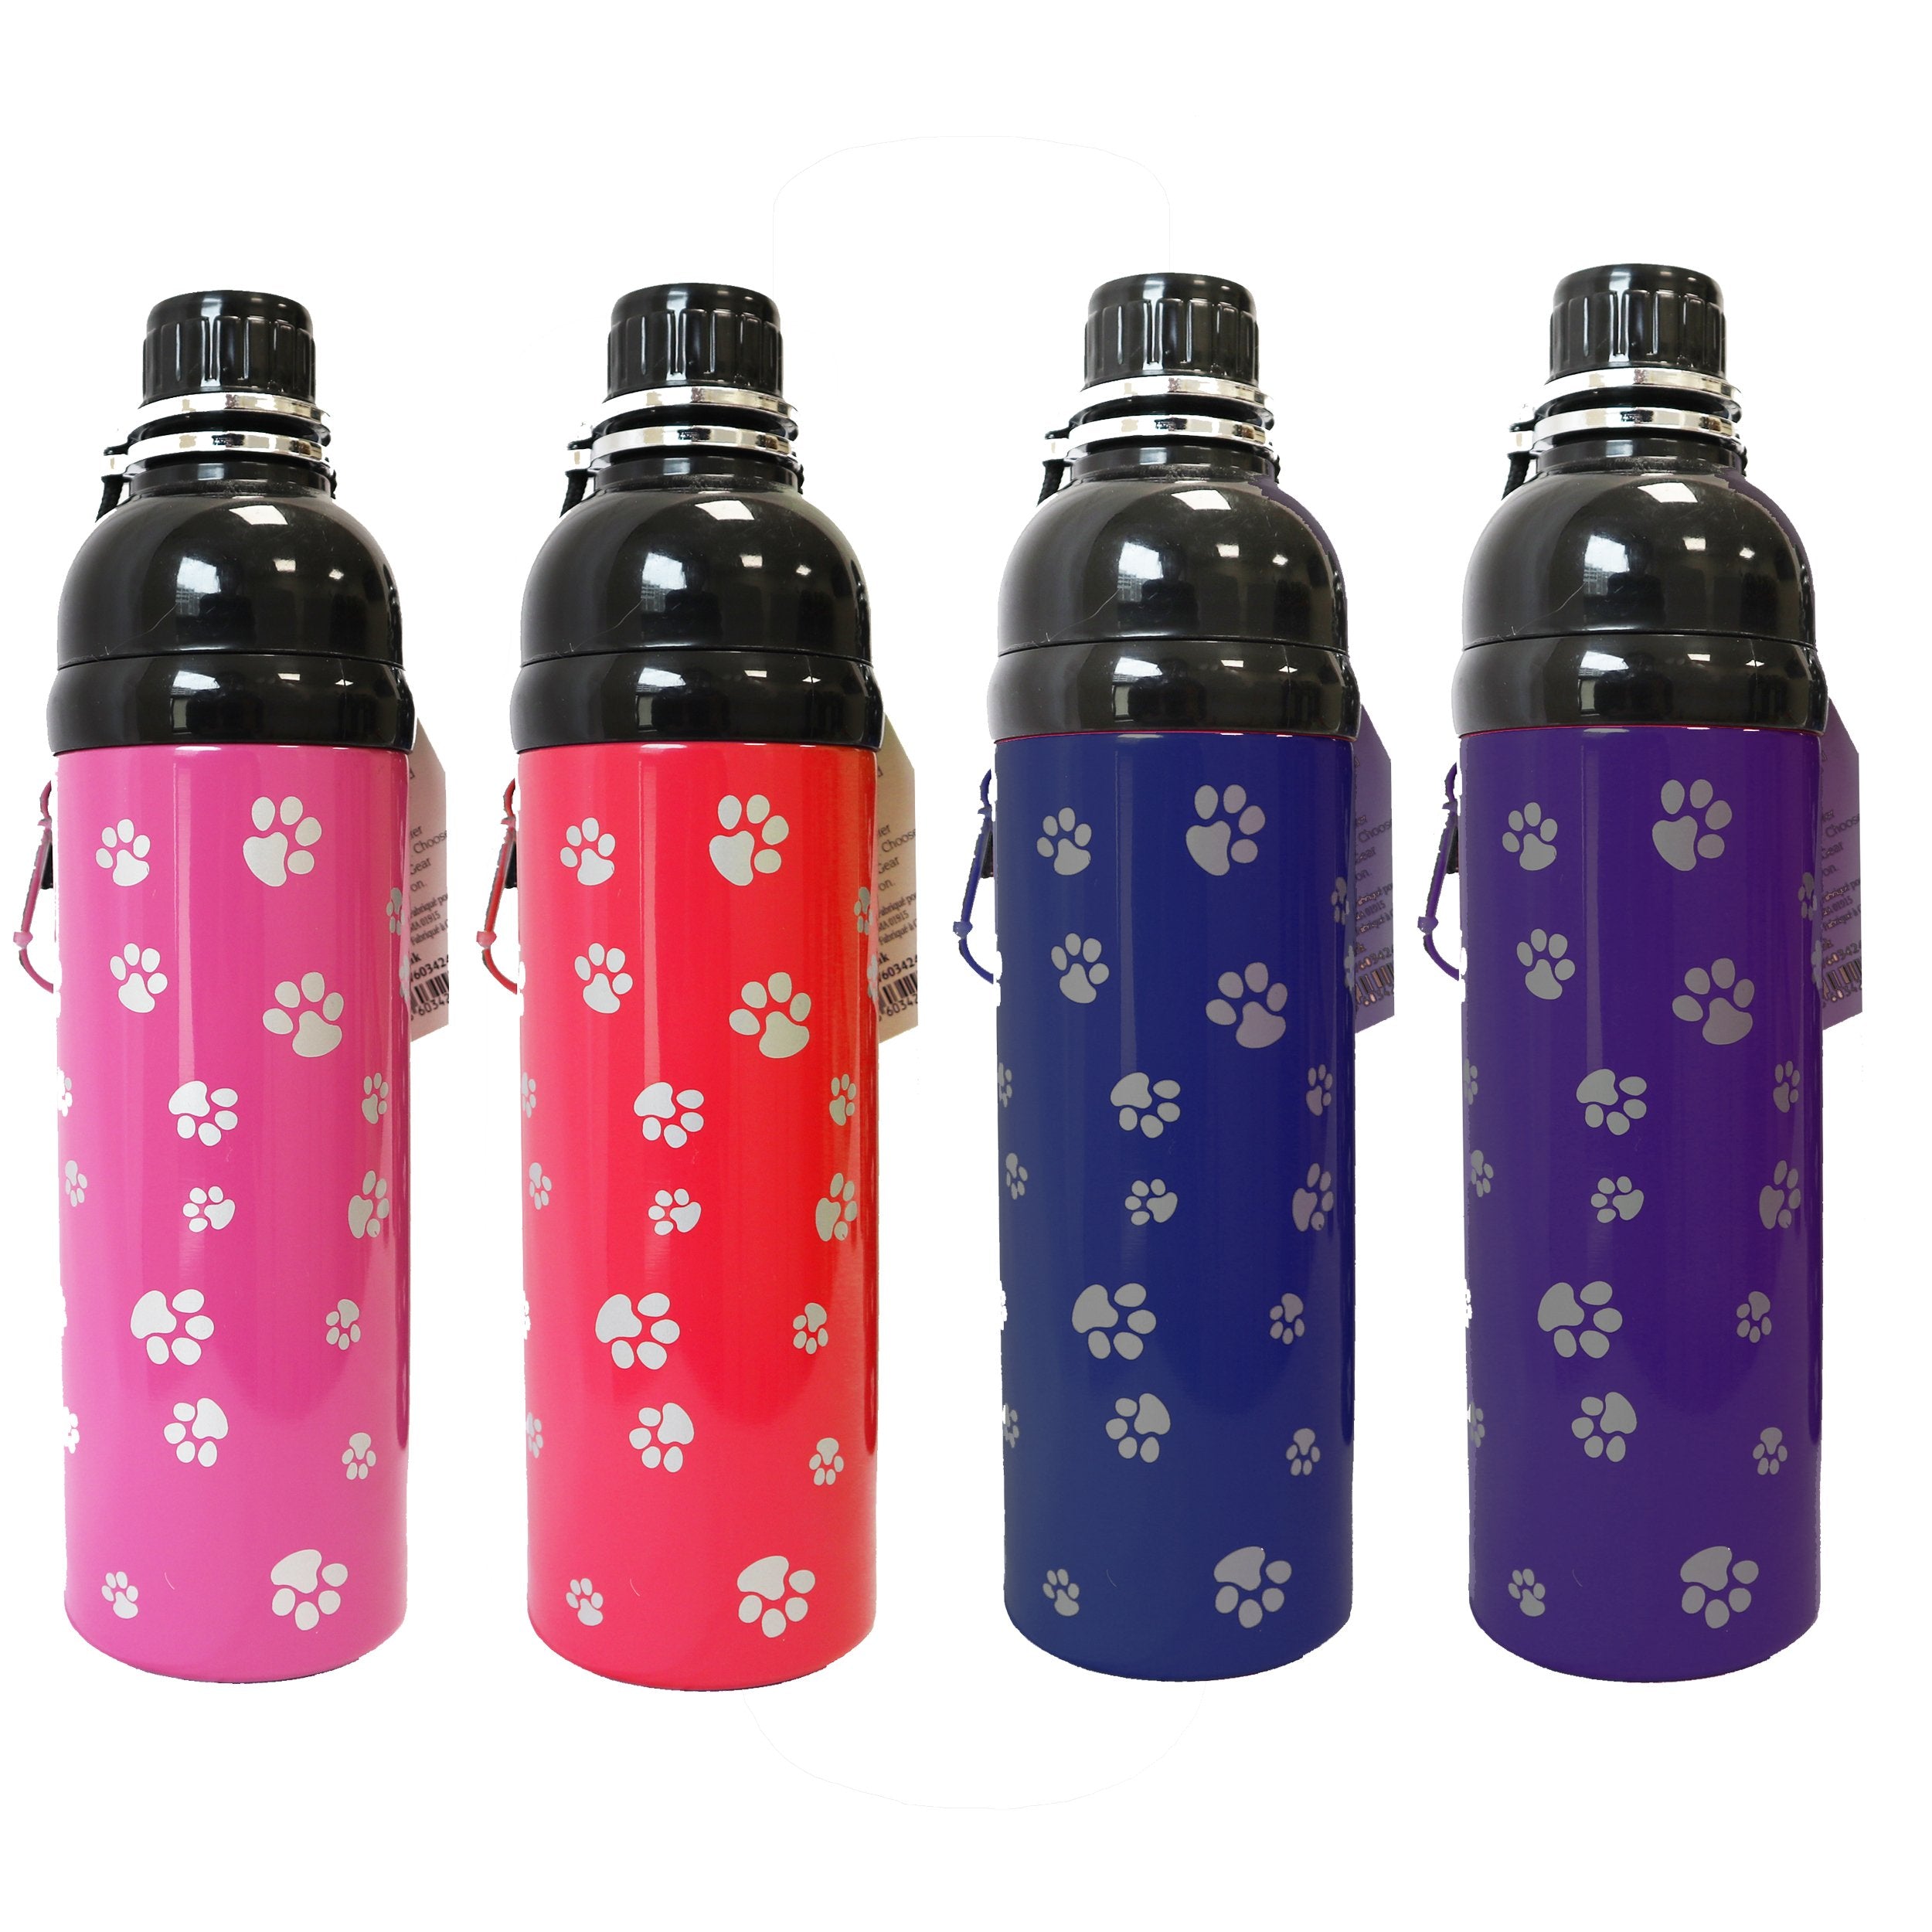 Guardian Gear Stainless Steel Pet Water Bottle In 4 Colors